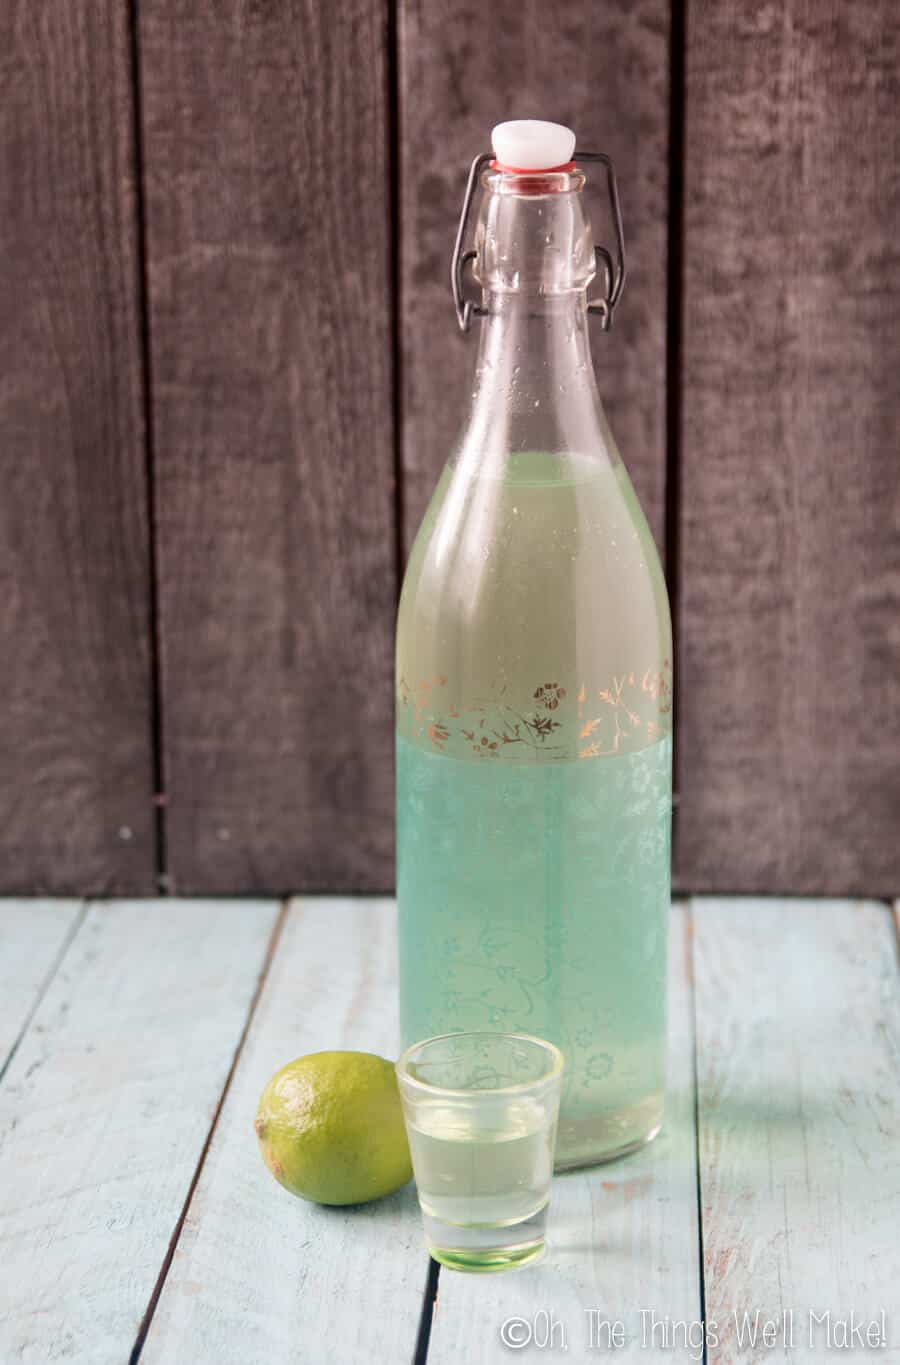 A bottle of homemade limecello